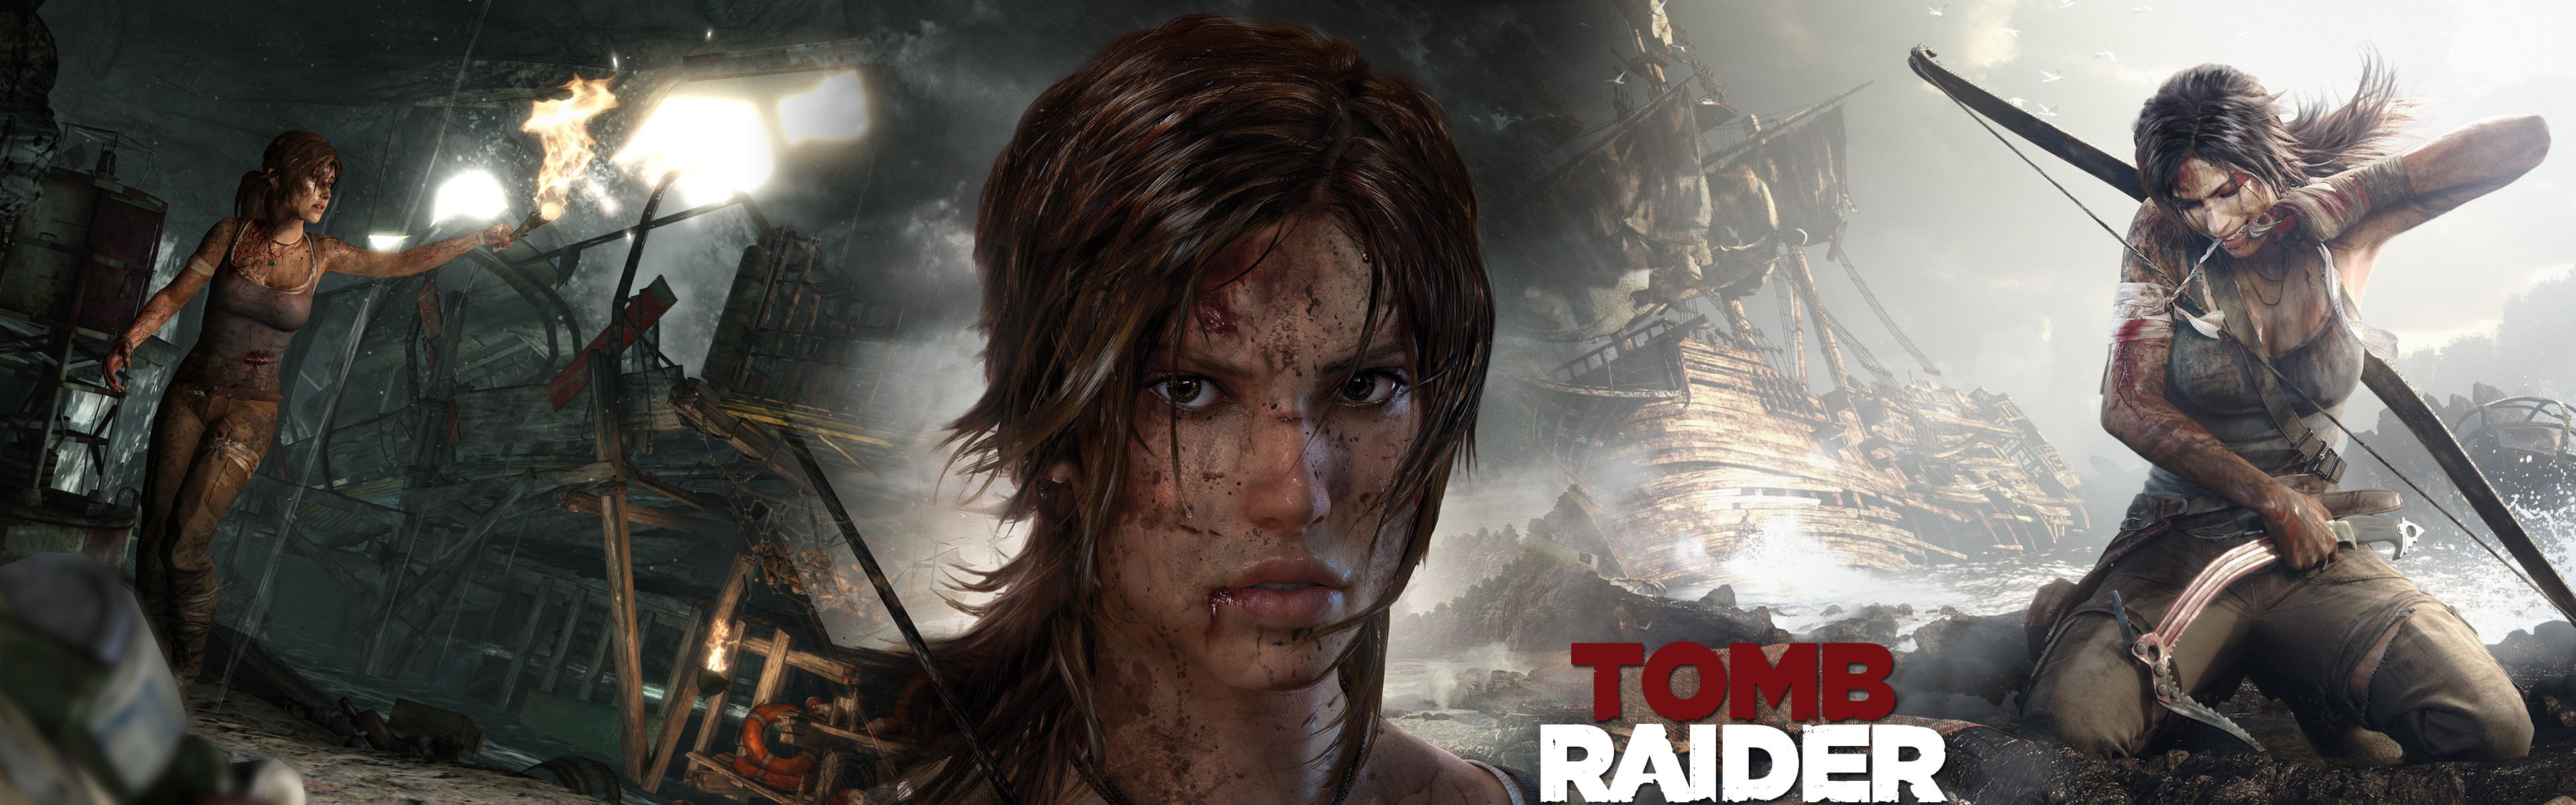 Tomb Raider Dual Screen Wallpaper | 3840x1200 | ID:45894